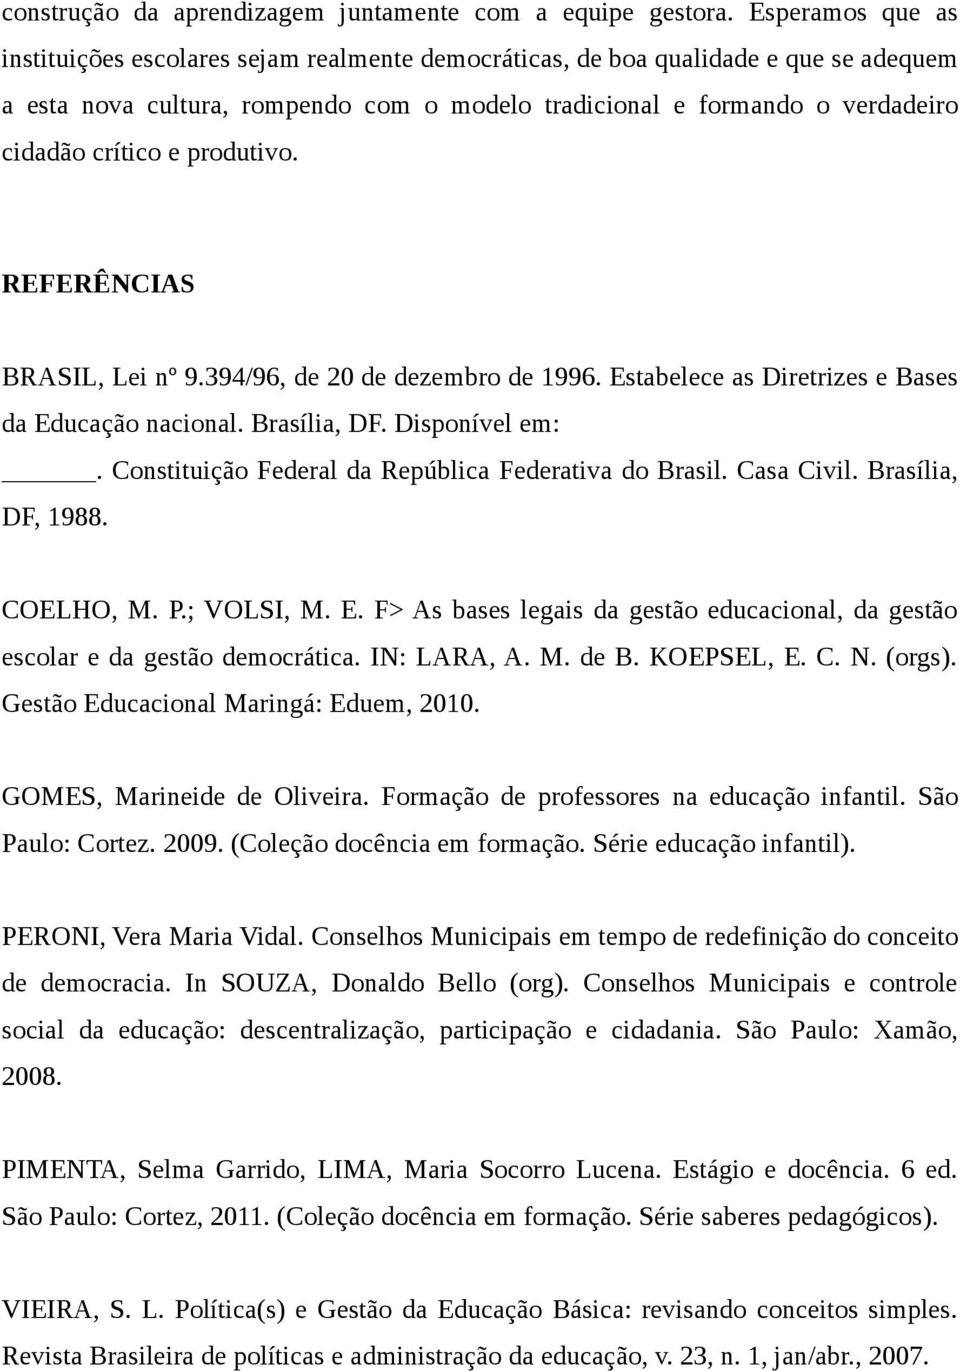 e produtivo. REFERÊNCIAS BRASIL, Lei nº 9.394/96, de 20 de dezembro de 1996. Estabelece as Diretrizes e Bases da Educação nacional. Brasília, DF. Disponível em:.